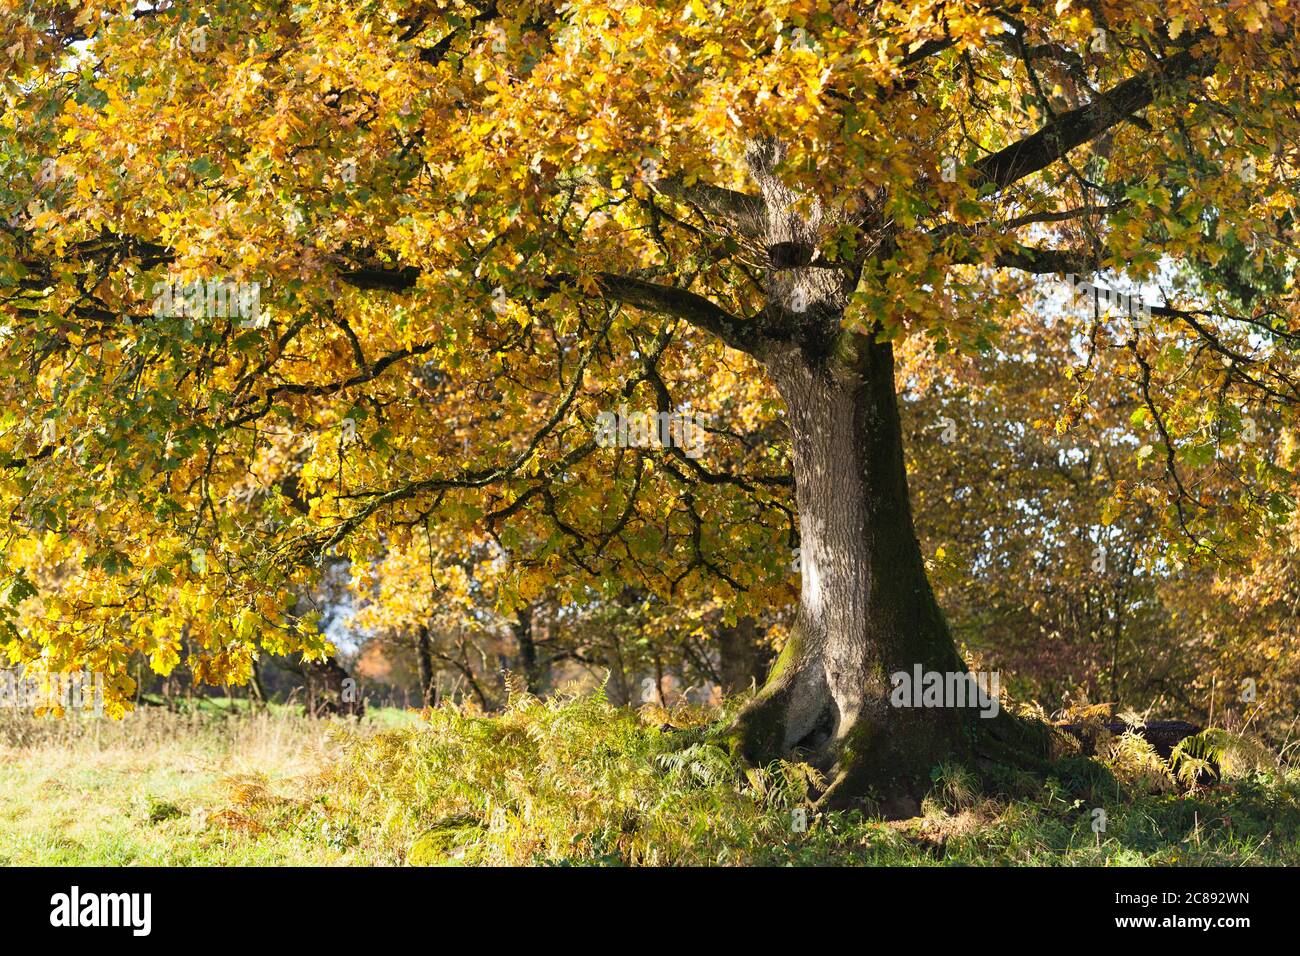 Vieux chêne en automne par une journée ensoleillée. Bretagne, France Banque D'Images